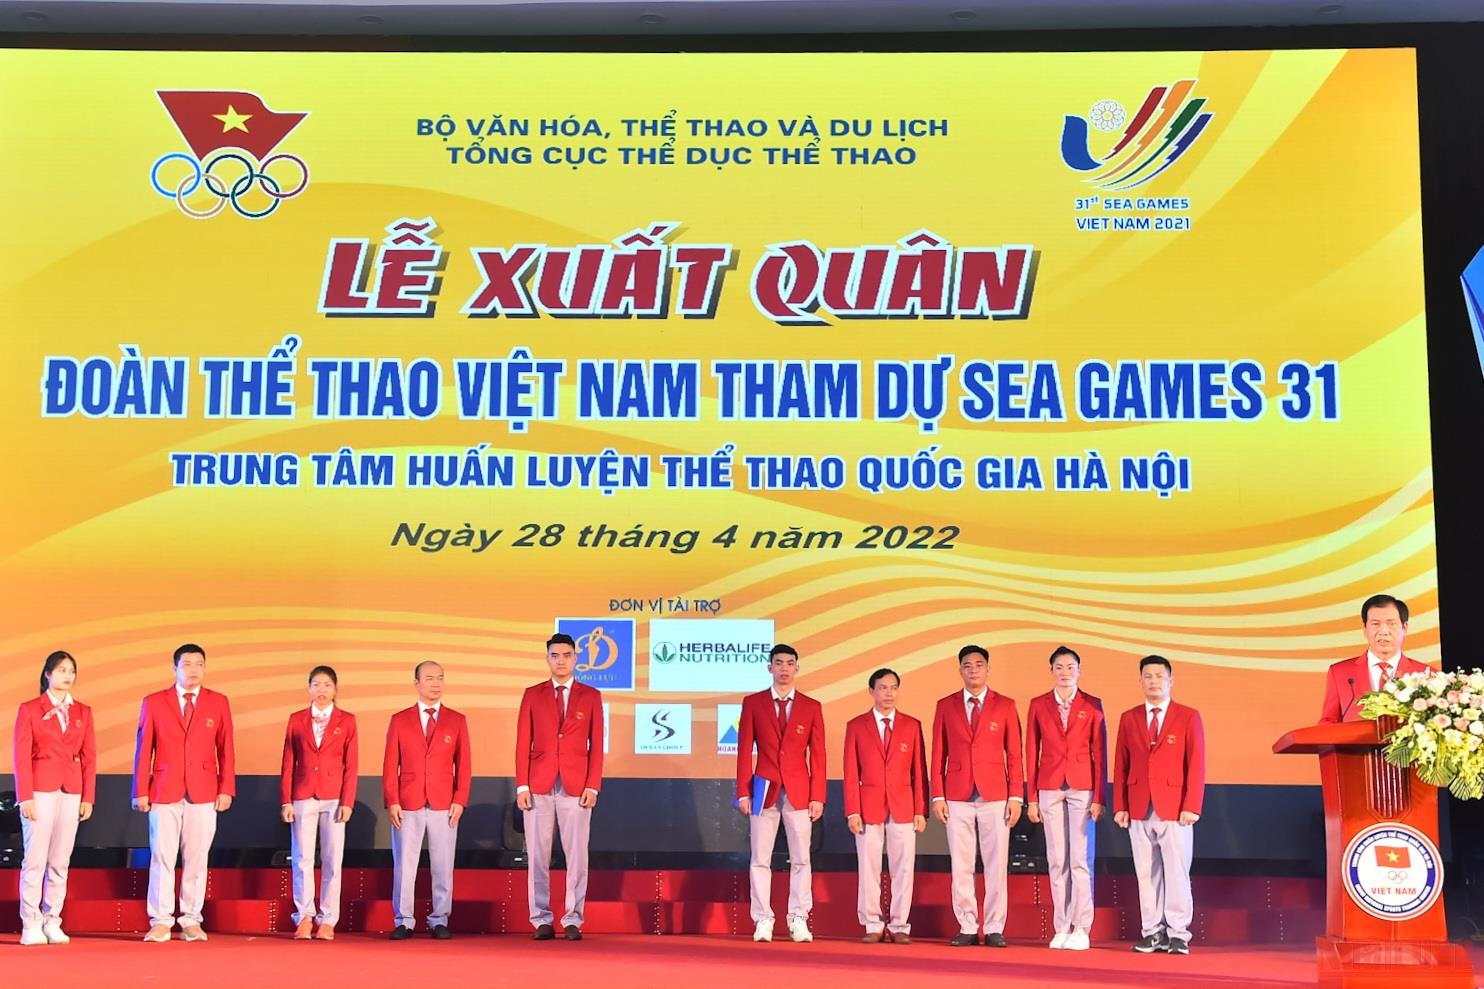 Trưởng đoàn Thể thao Việt Nam Trần Đức Phấn báo cáo công tác chuẩn bị và tham dự SEA Games 31.